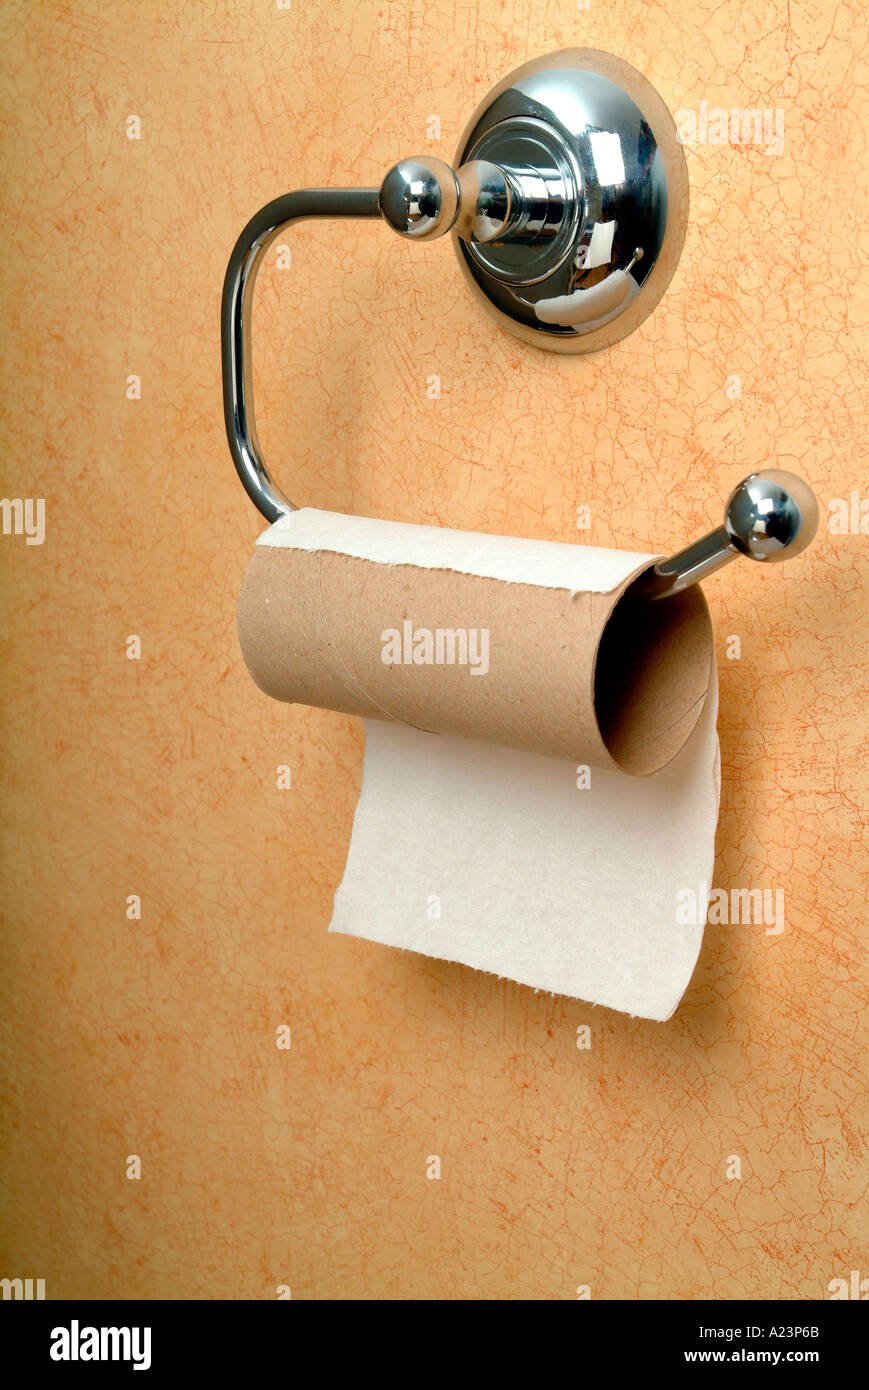 Rouleau de papier toilette vide et support Photo Stock - Alamy